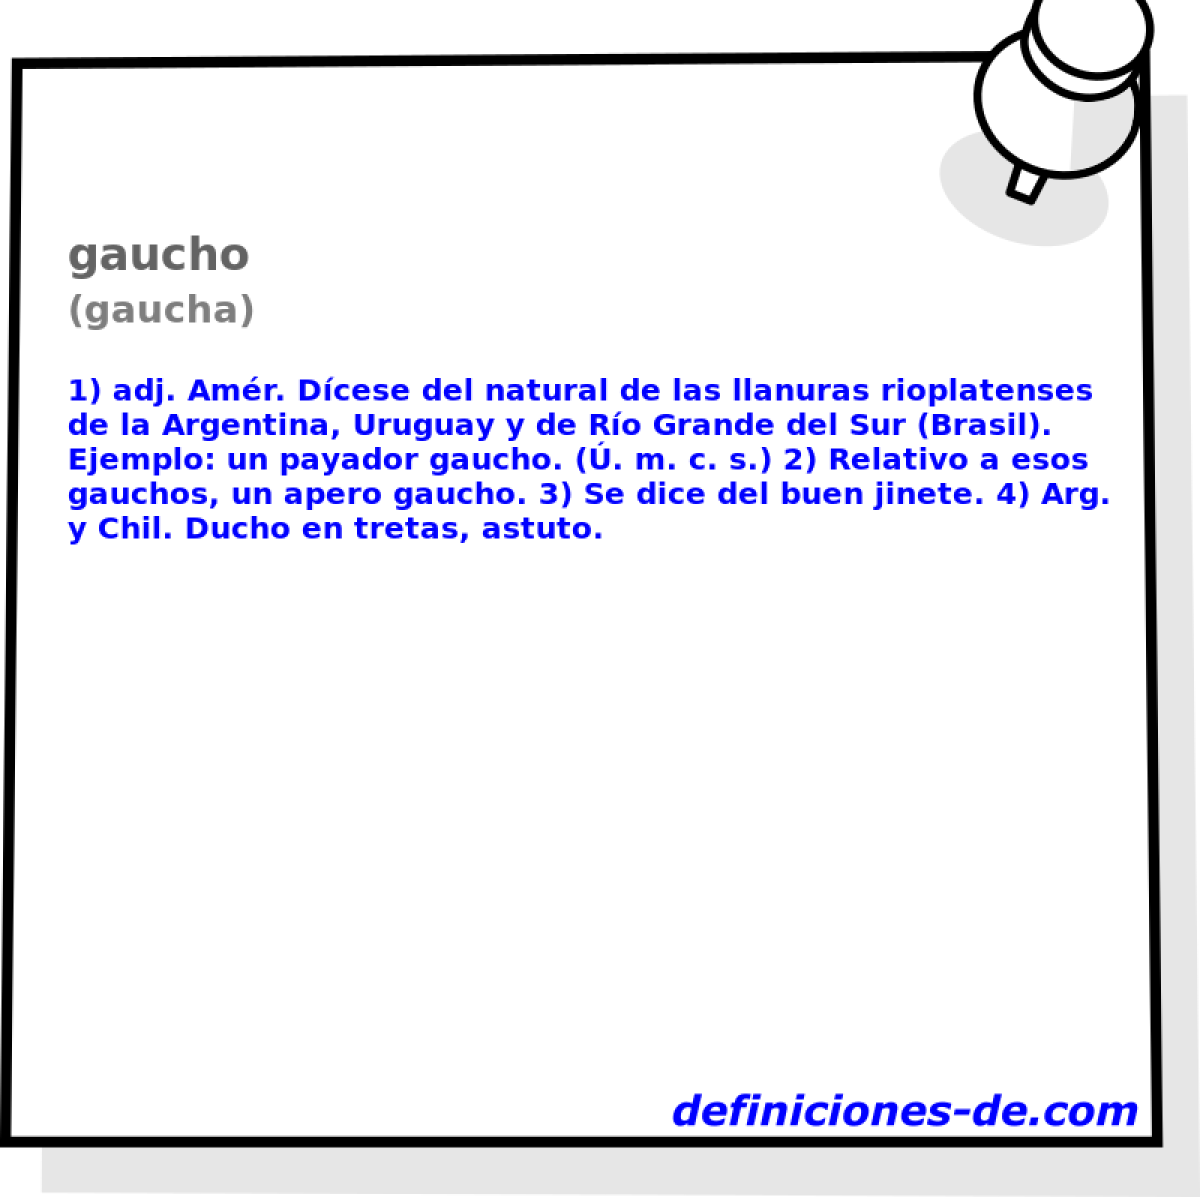 gaucho (gaucha)